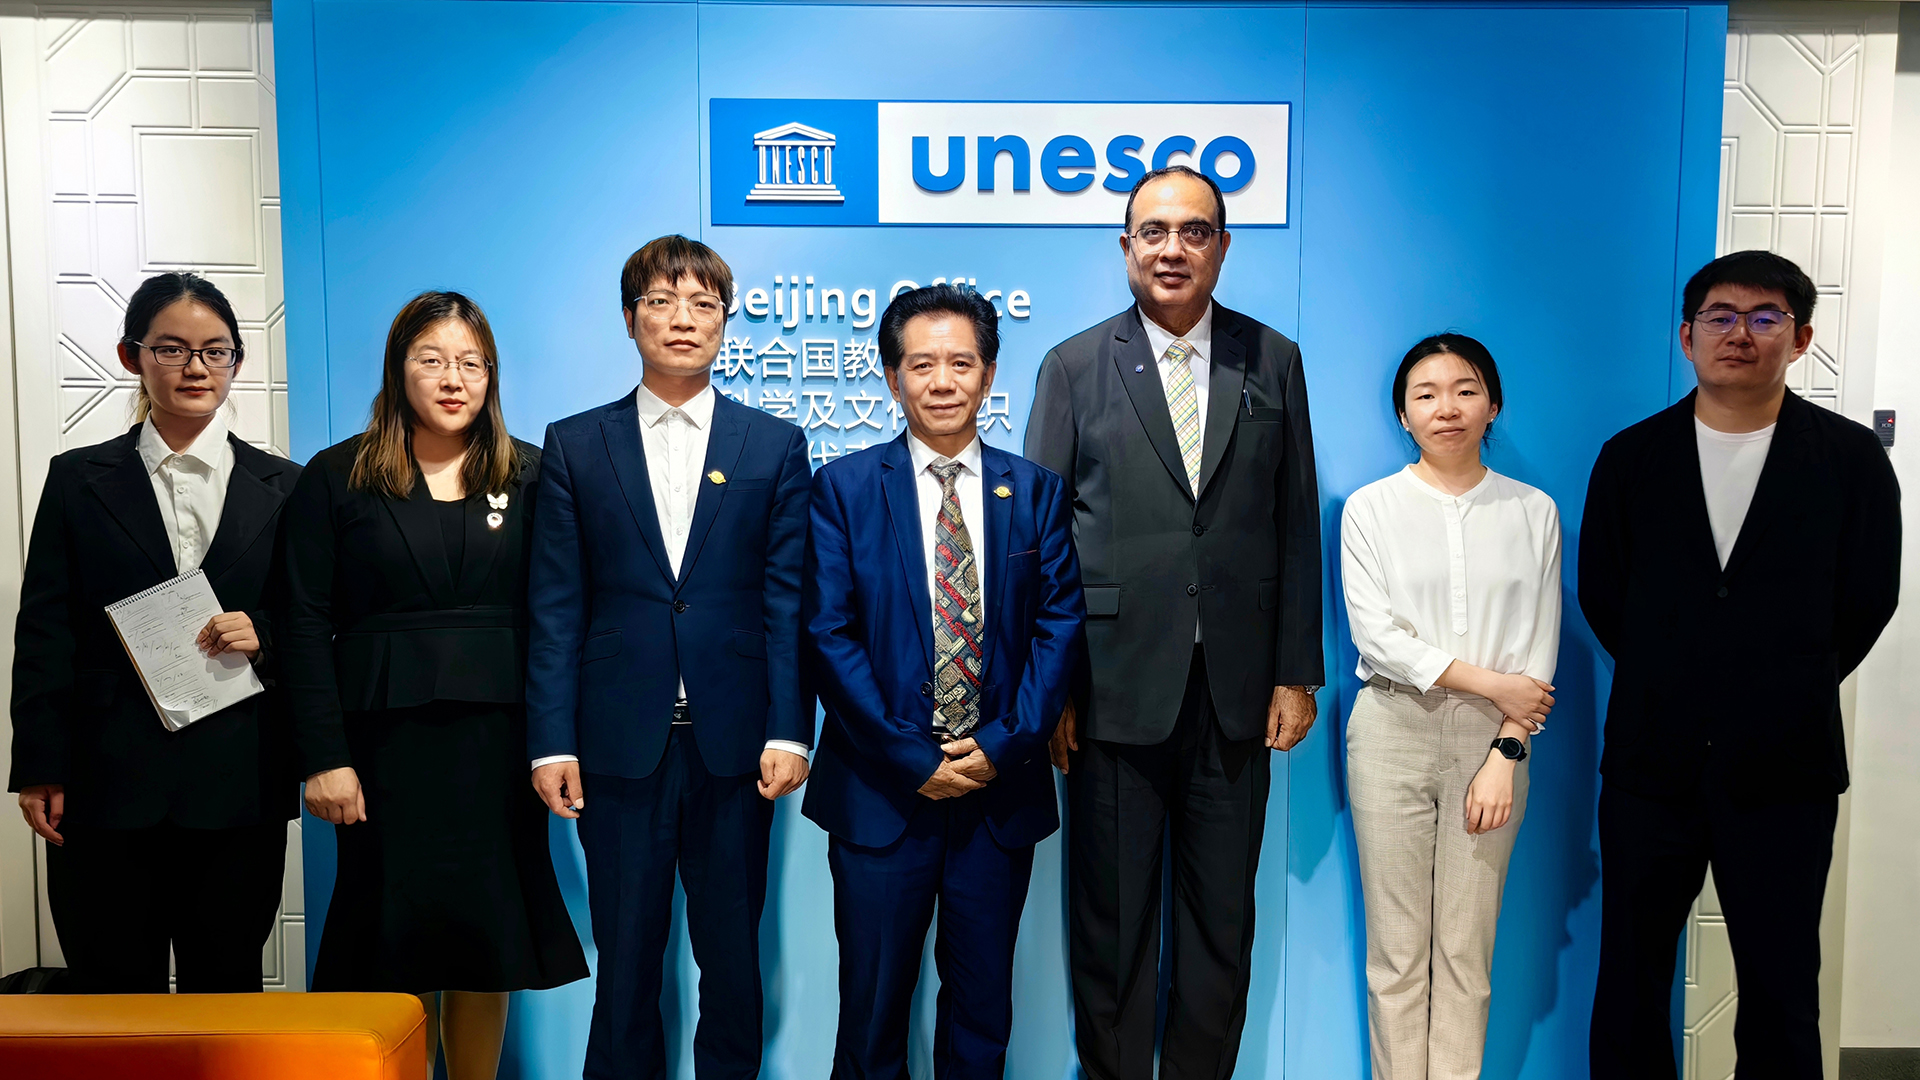 WIOTC Visit the UNESCO Office in Beijing